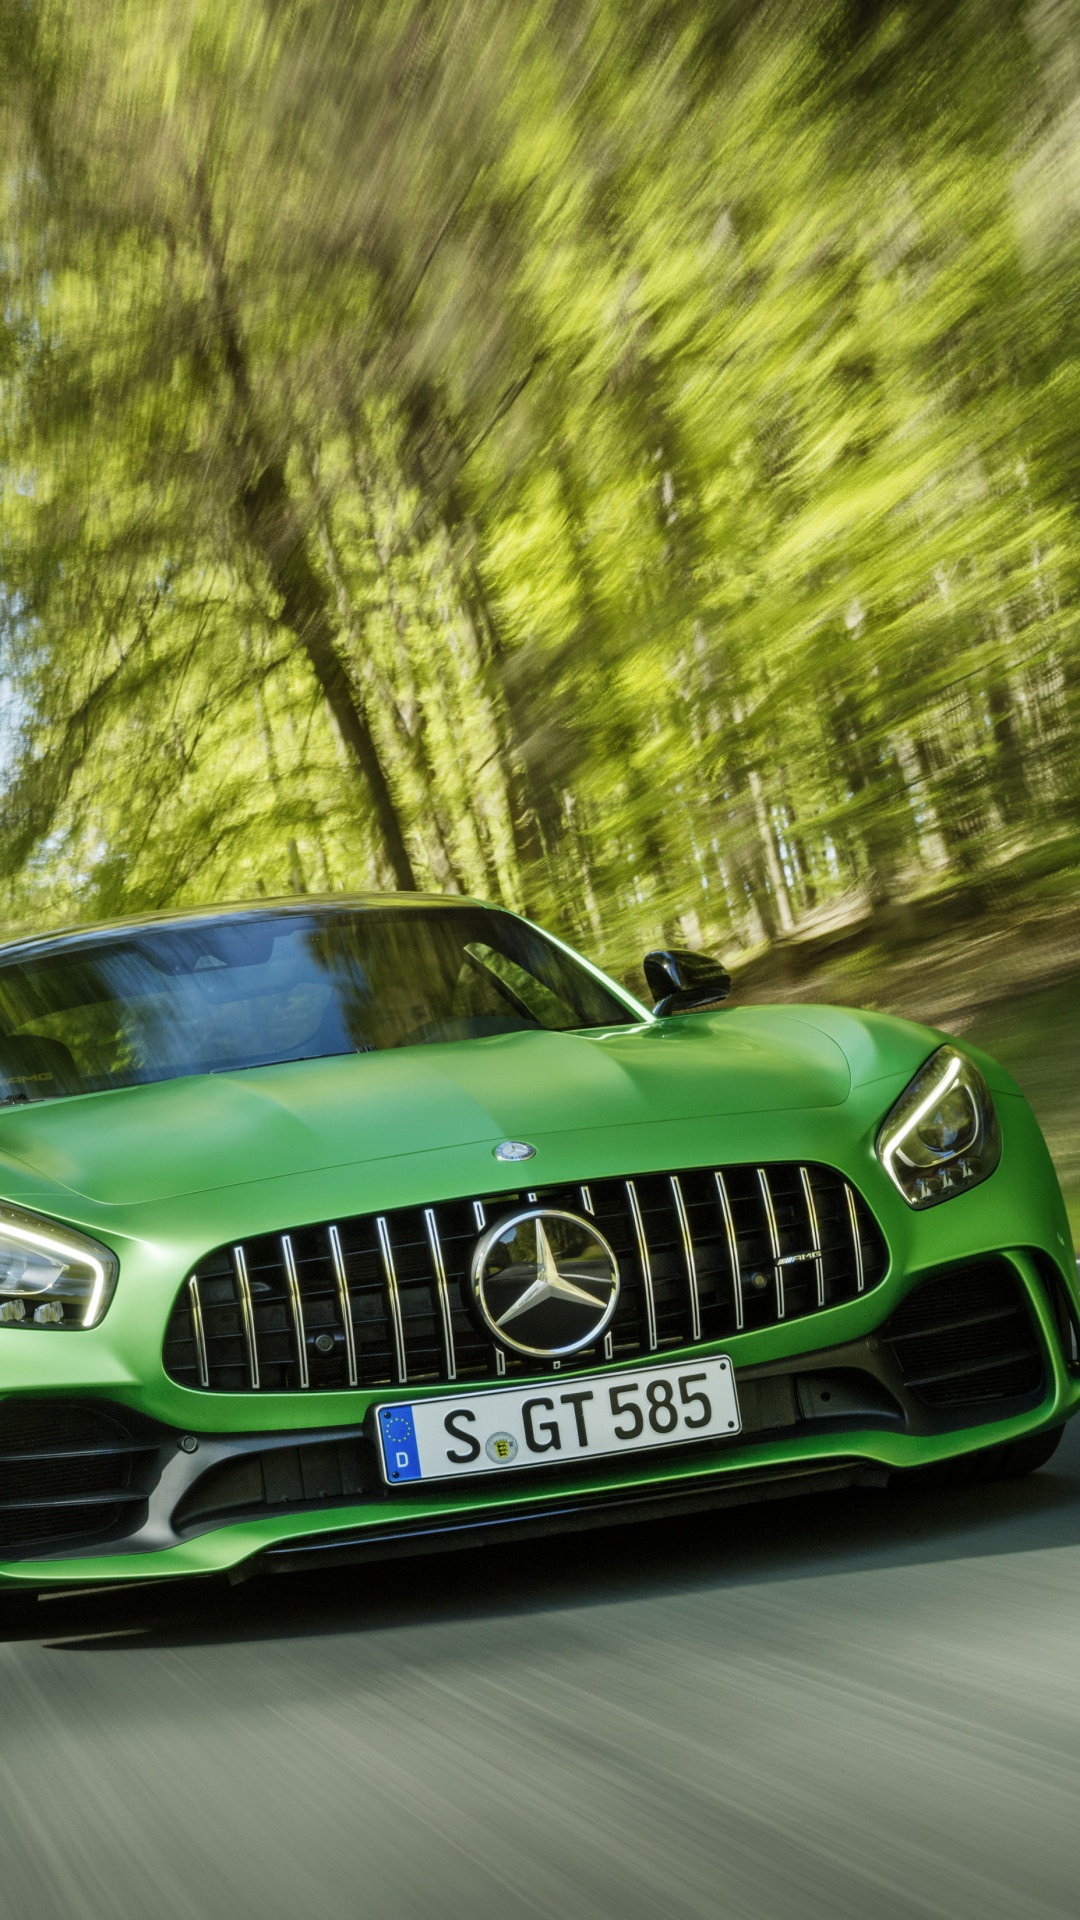 Grünes Mercedes Benz Auto Tagsüber Unterwegs. Wallpaper in 1080x1920 Resolution